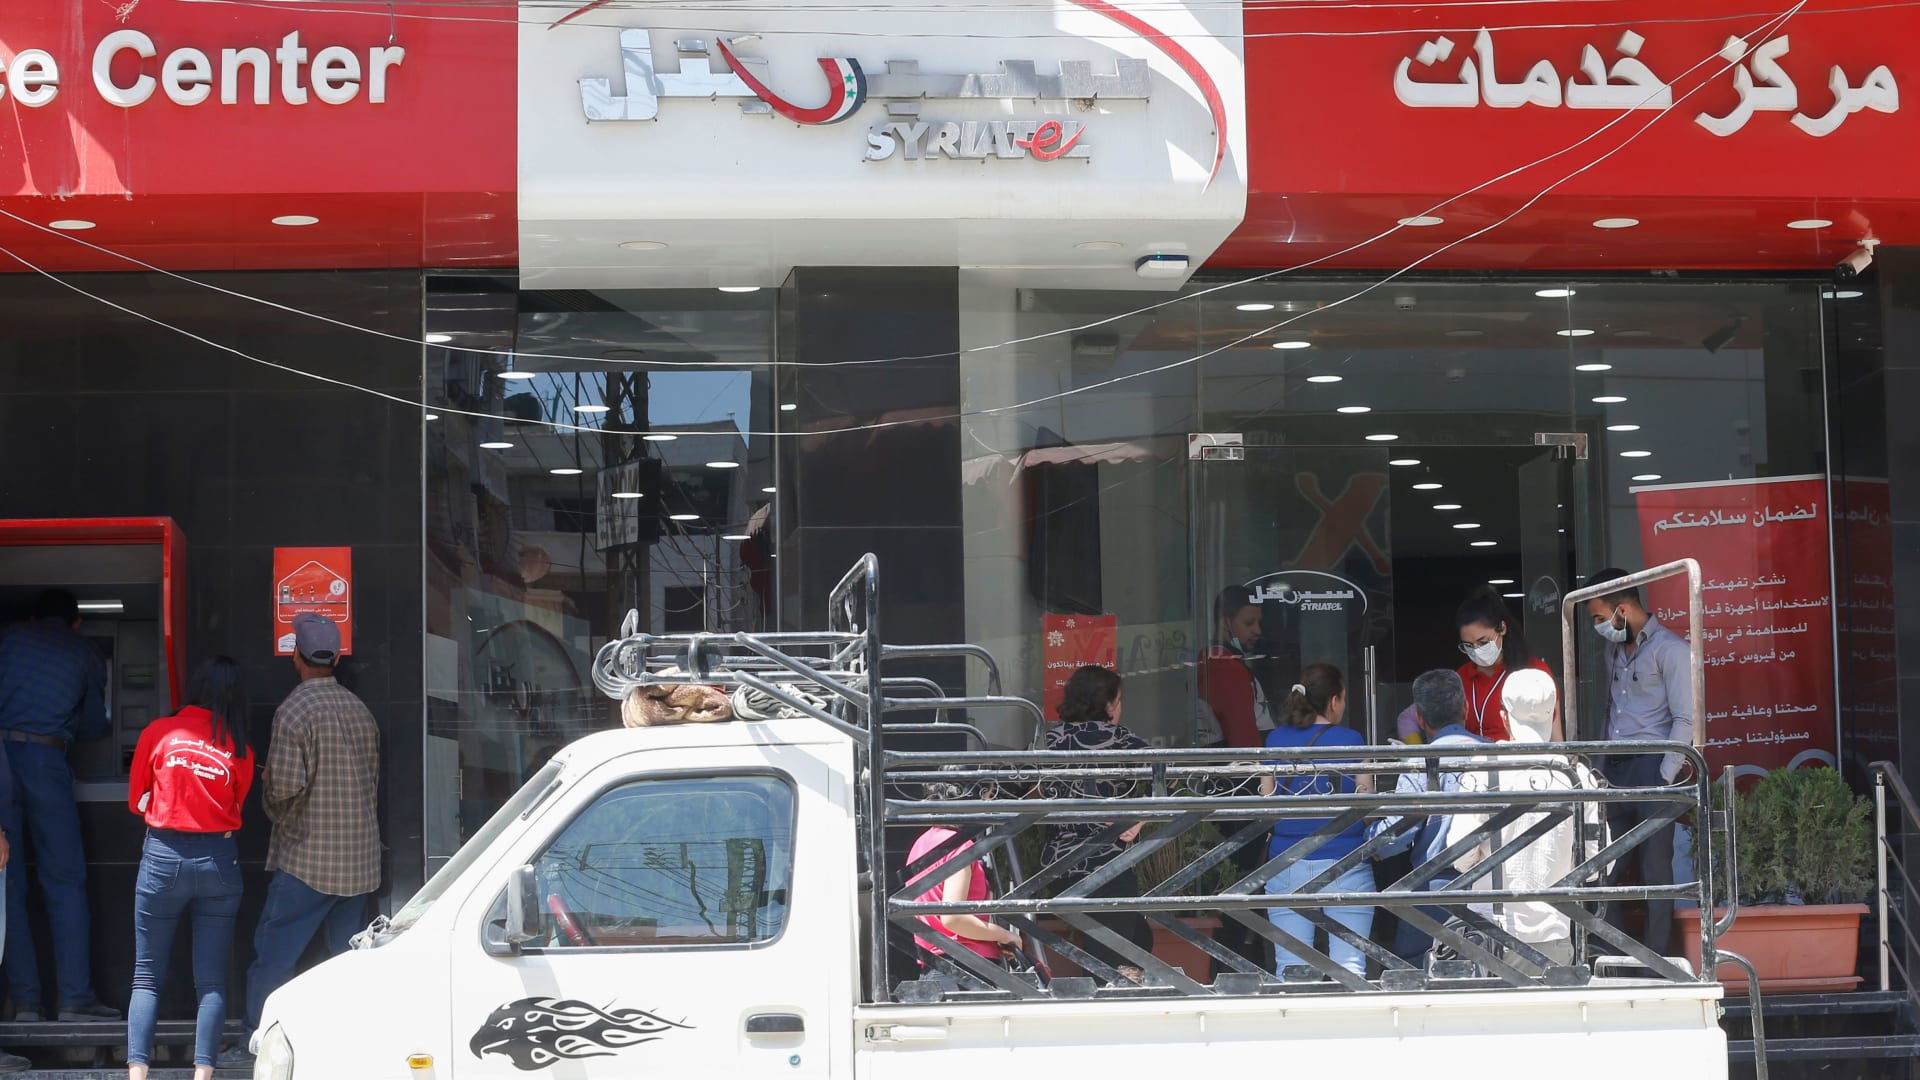 وزارة العدل السورية تنفي تعيين حارس قضائي على شركة رامي مخلوف: "قرار مزور"